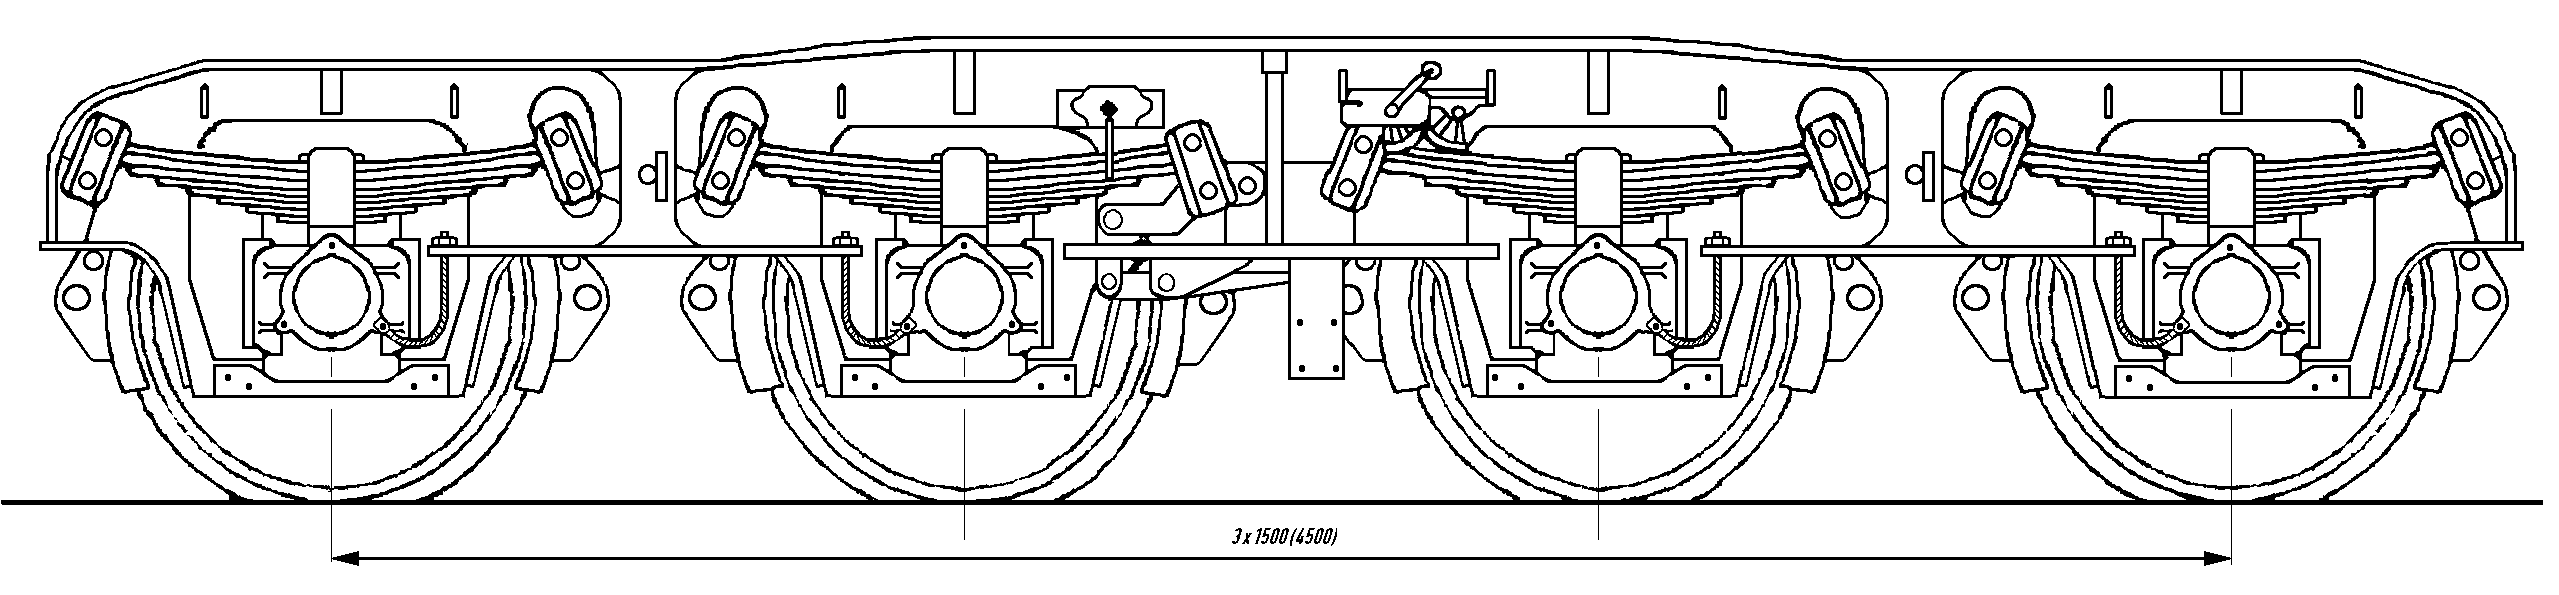 Tiefladewagen-Drehgestell Krupp 70, vierachsig; Skizze